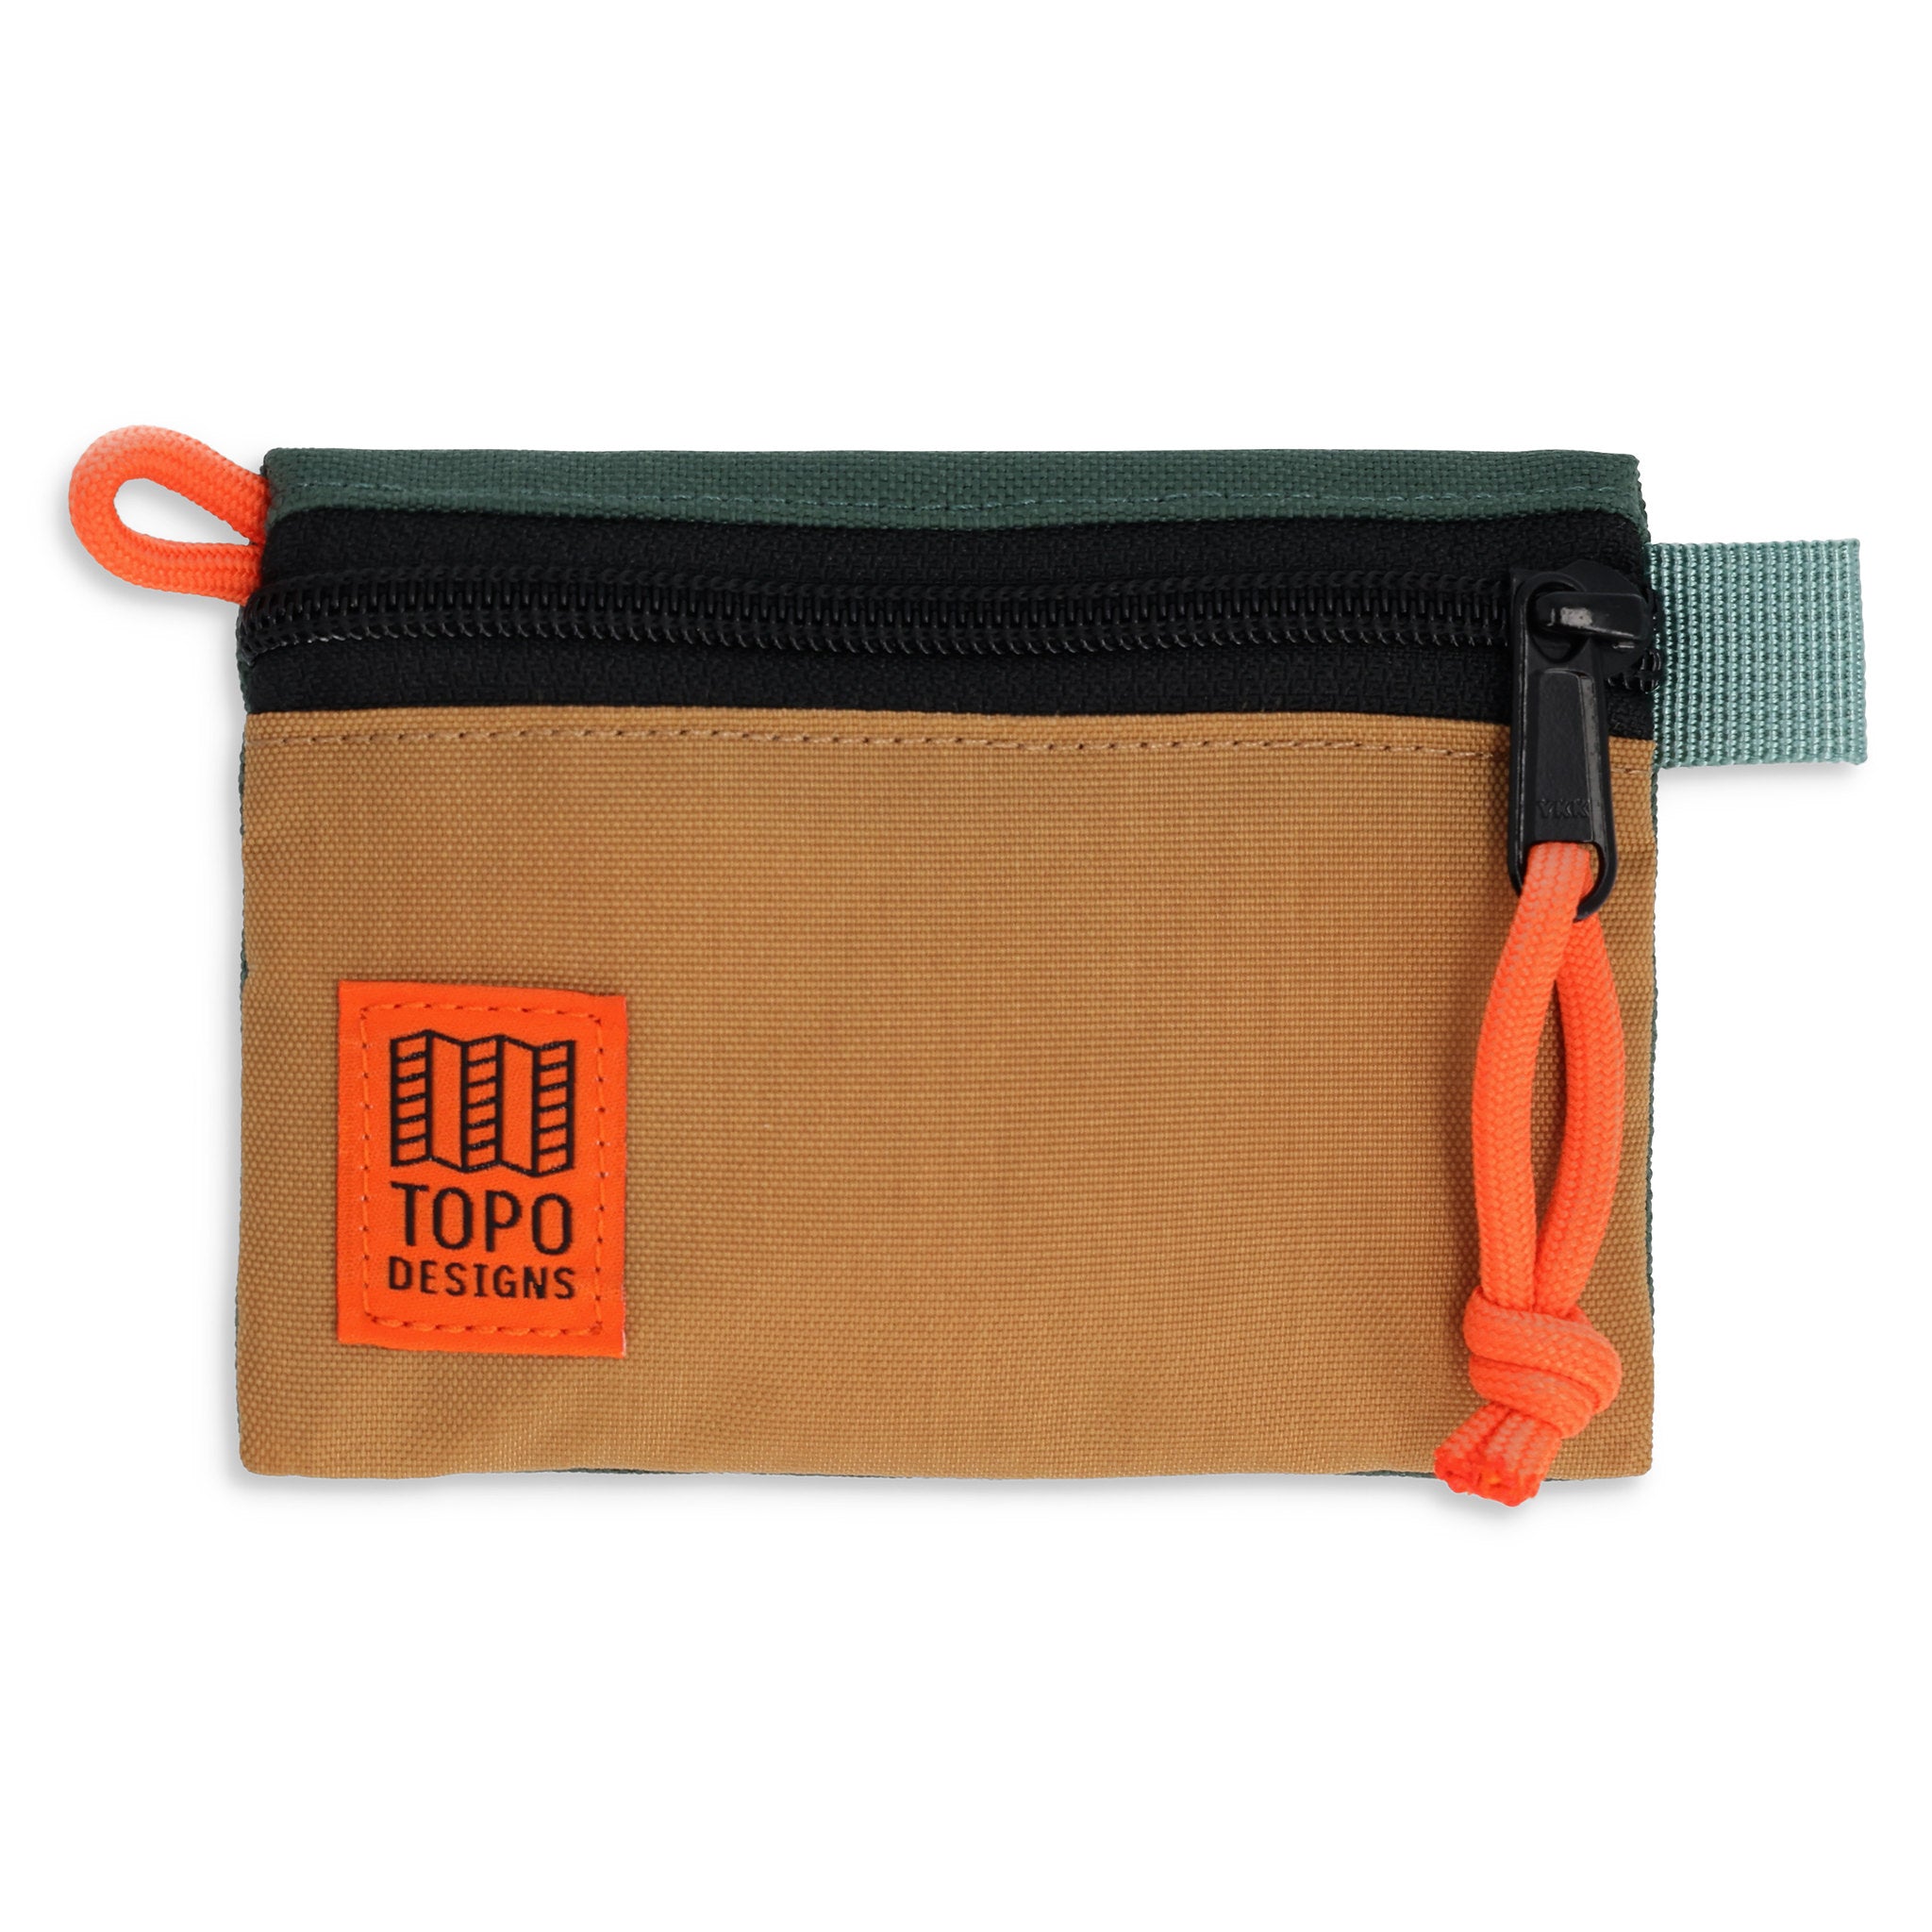 Accessory Bag Micro | Topo Designs